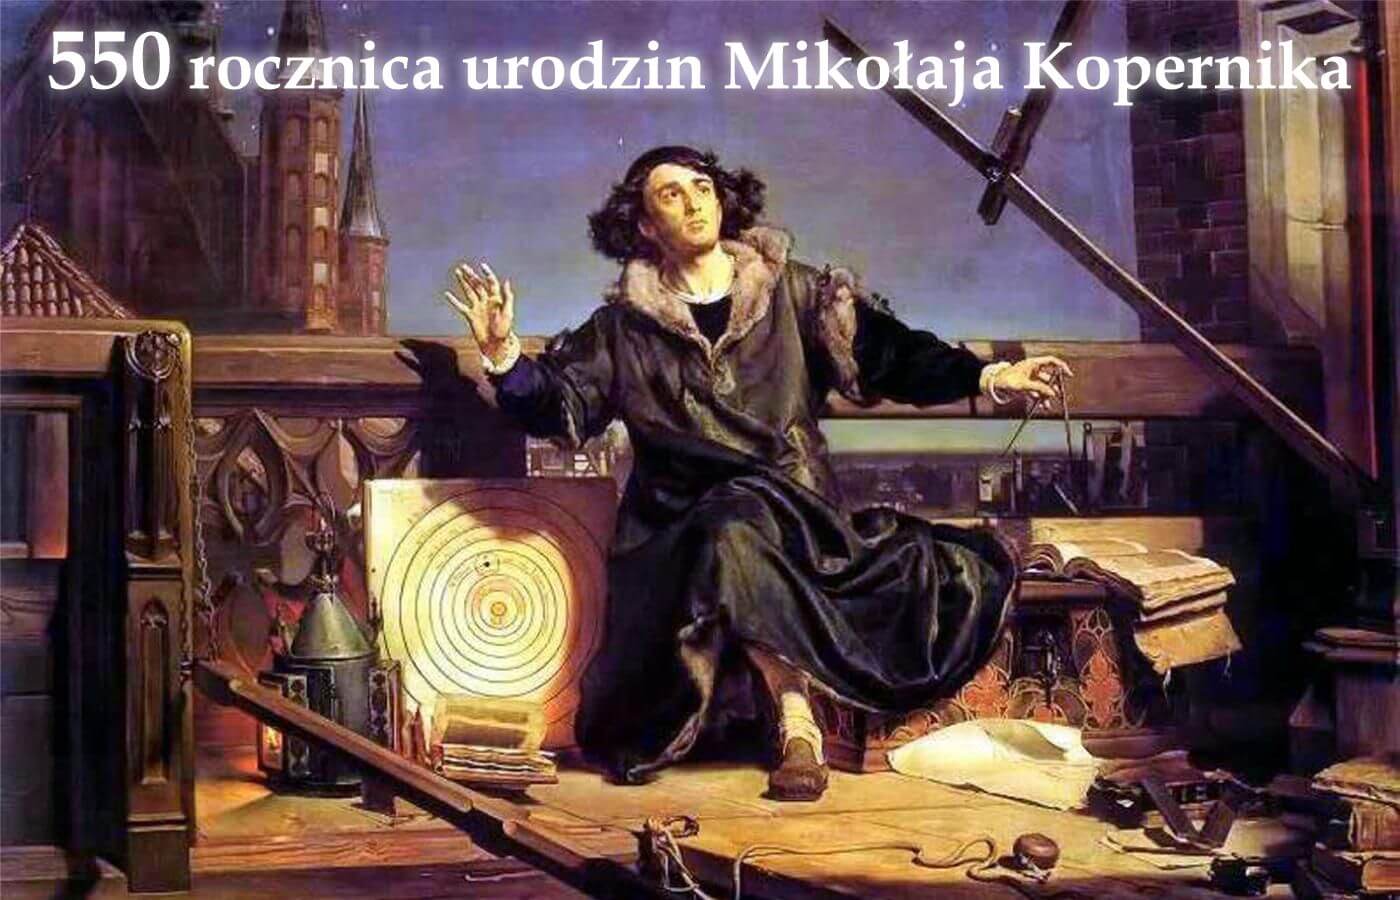 19 lutego 2023 r. przypada 550. rocznica urodzin Mikołaja Kopernika – astronoma, matematyka, lekarza, prawnika, ekonomisty, twórcy teorii heliocentrycznej ☀️ 🌗 W dniu urodzin wybitnego uczonego obchodzimy Dzień Nauki Polskiej. Mikołaj Kopernik jest także jednym z patronów roku 2023 💫🪐